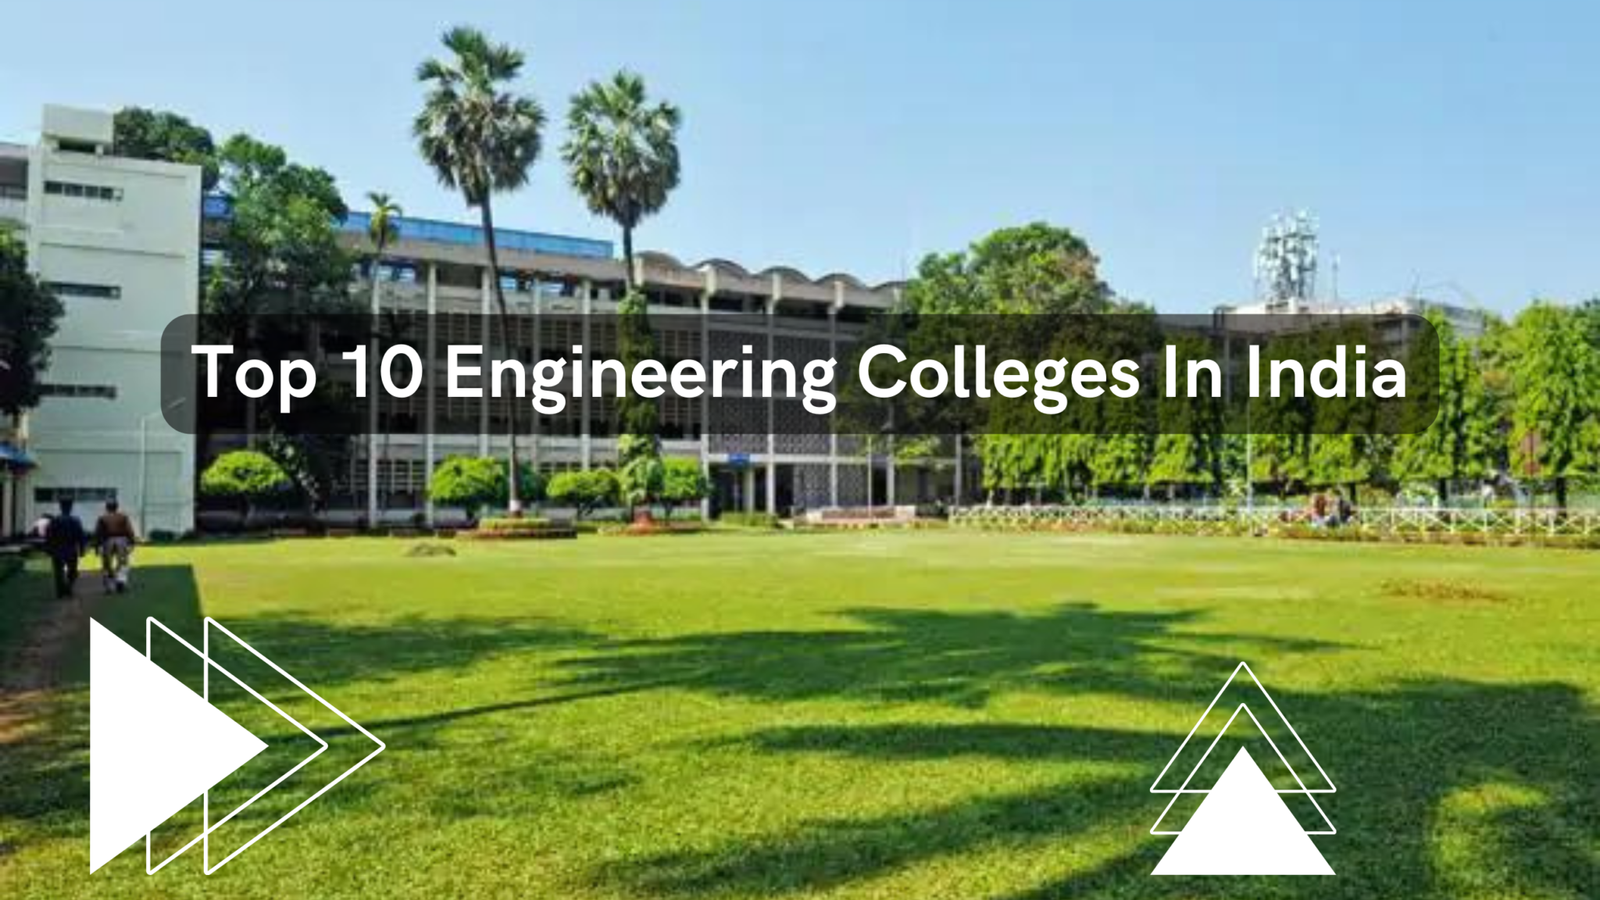 Top 10 Engineering Colleges in India Dheeraj Patidar